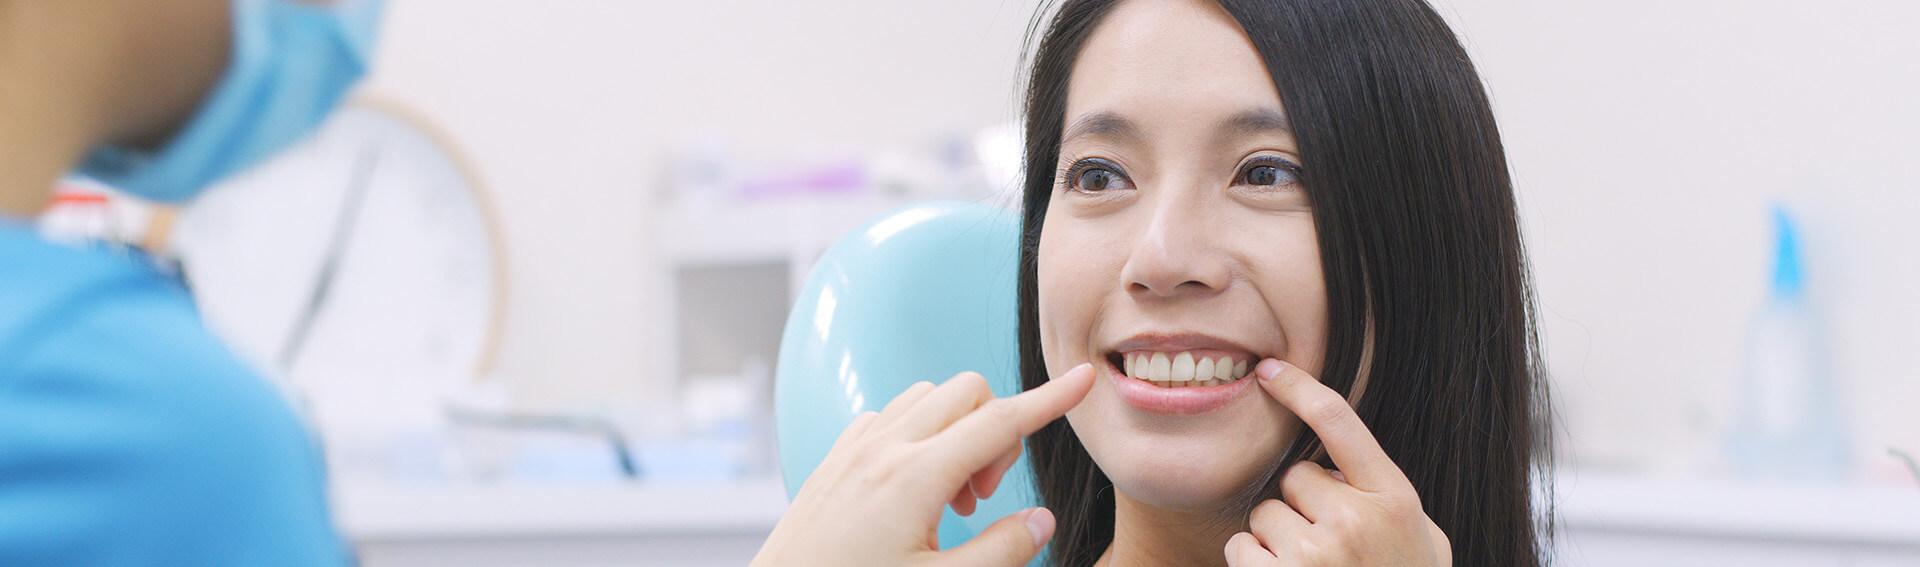 Smile Center Buffalo NY - Dental Implants